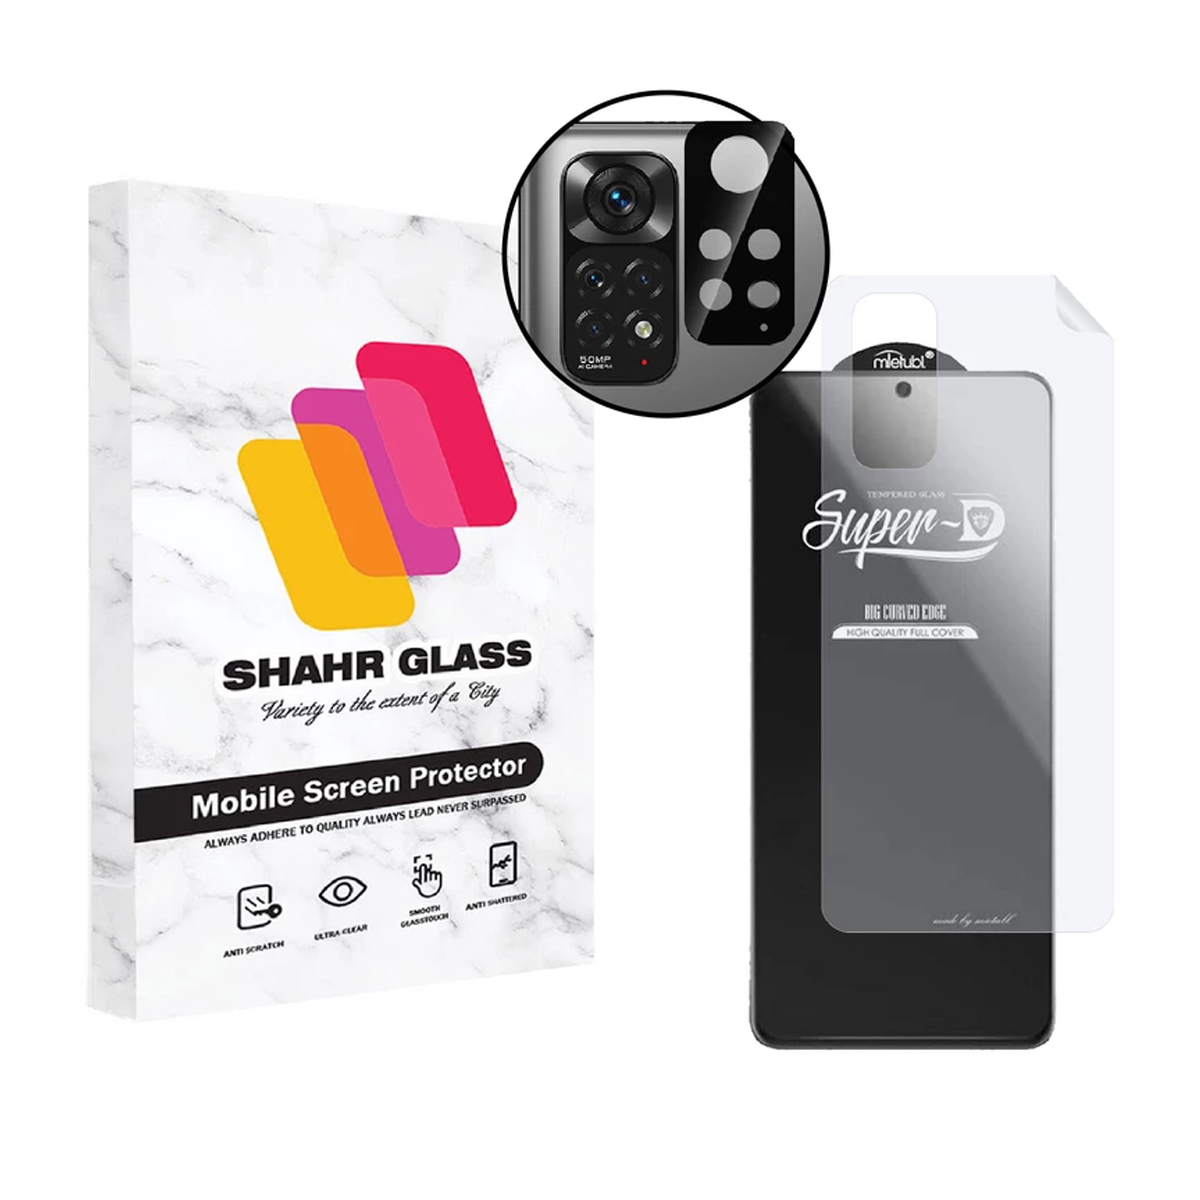 گلس گوشی شیائومی Redmi Note 11 شهر گلس مدل 3SNF-Glass به همراه محافظ پشت گوشی و محافظ لنز دوربین-مشکی